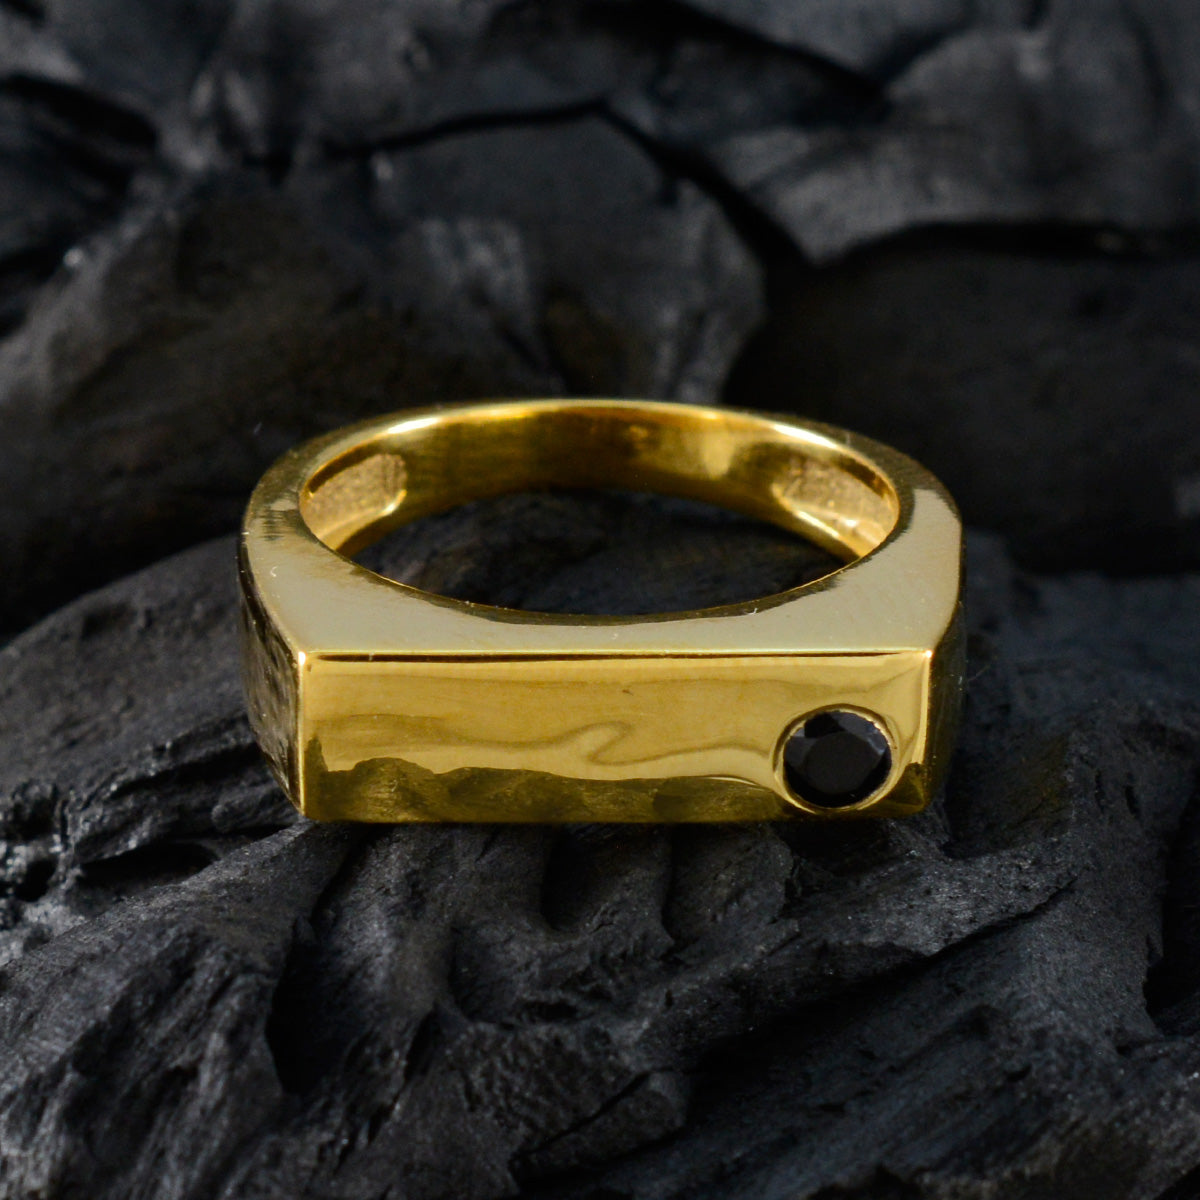 Riyo Perfekter Silberring mit Gelbgoldbeschichtung, blauer Saphirstein, runde Form, Lünettenfassung, stilvoller Schmuck, Black-Friday-Ring